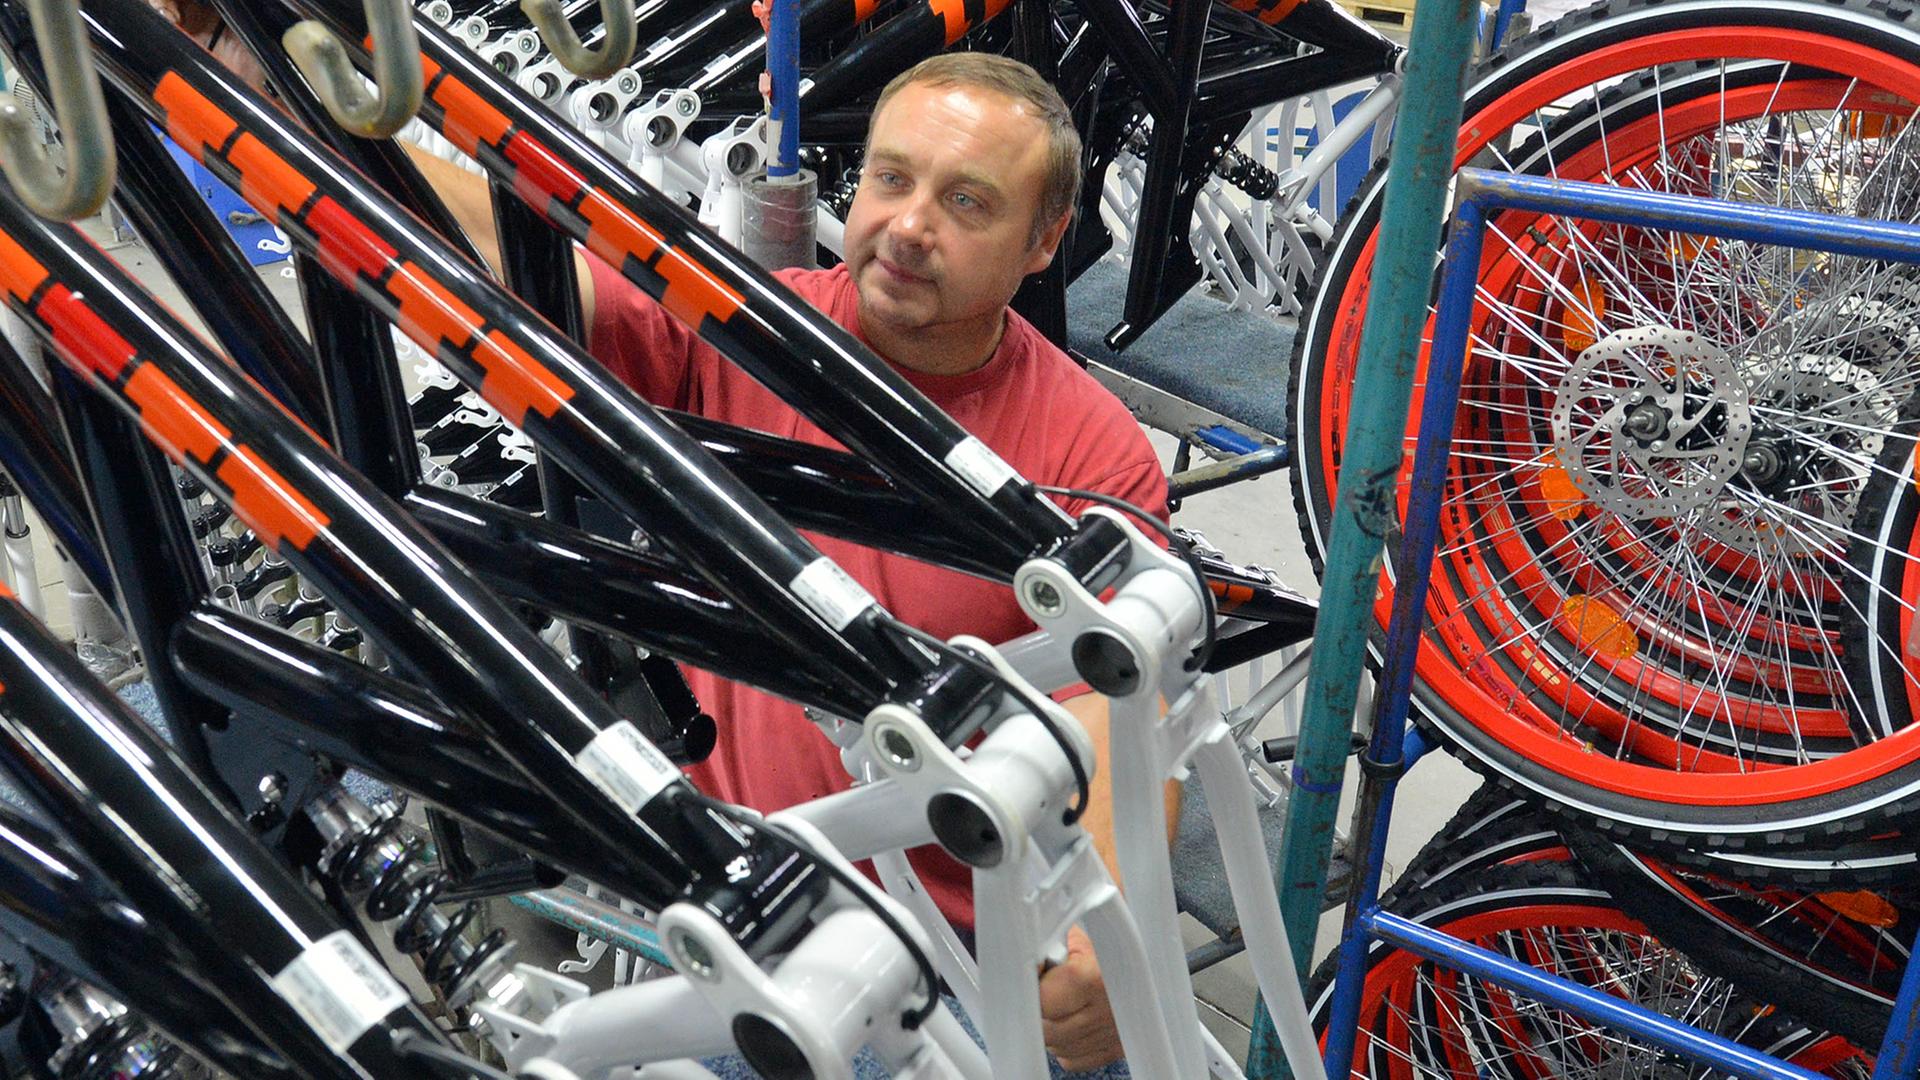 Fahrradrahmen kontrolliert Dieter Mansfeld am 06.09.2012 in der Produktion des Fahrradherstellers Mifa in Sangerhausen.